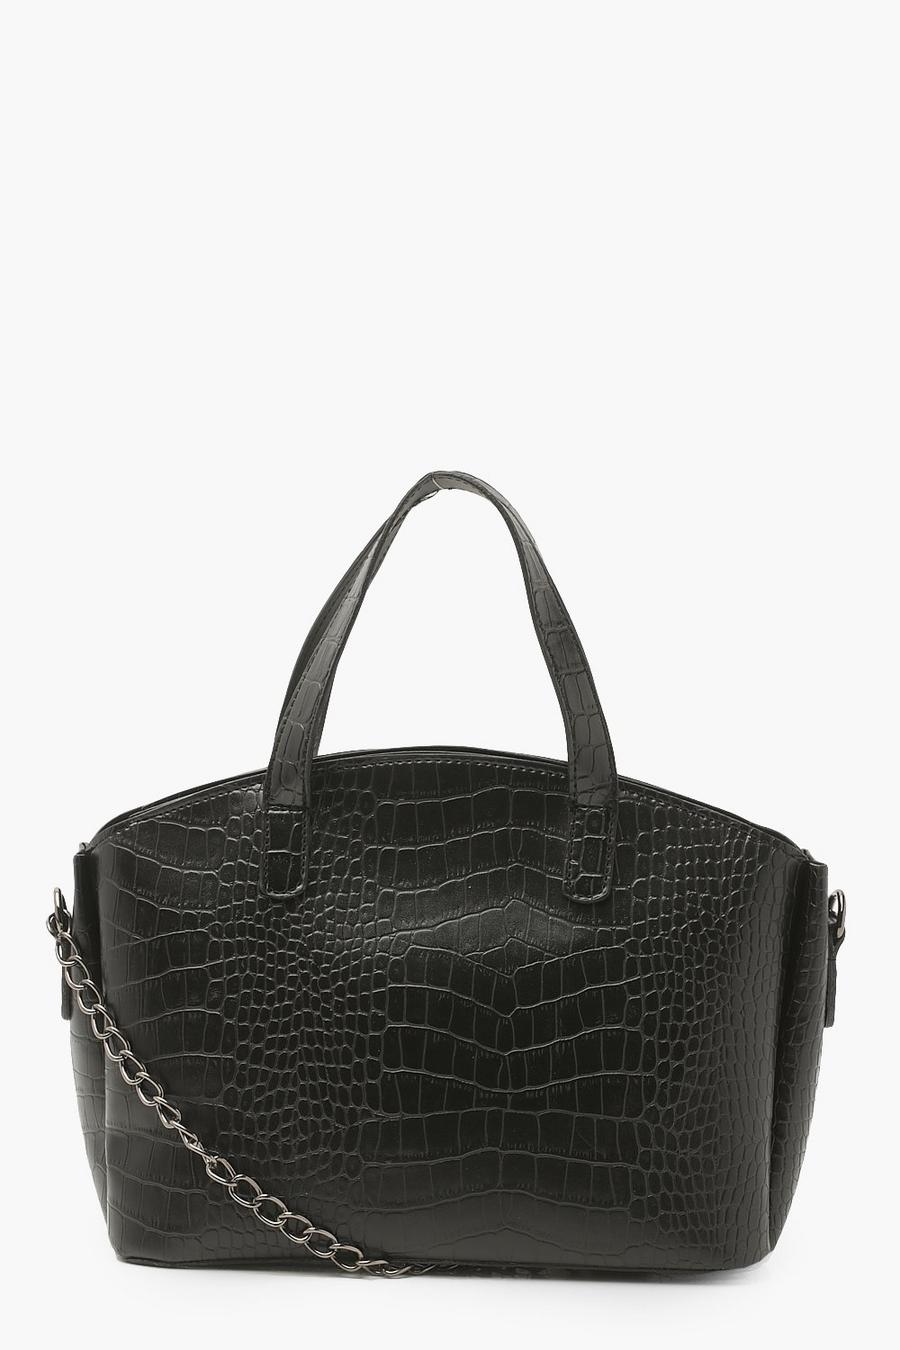 Black Croc Top Handle Day Bag image number 1